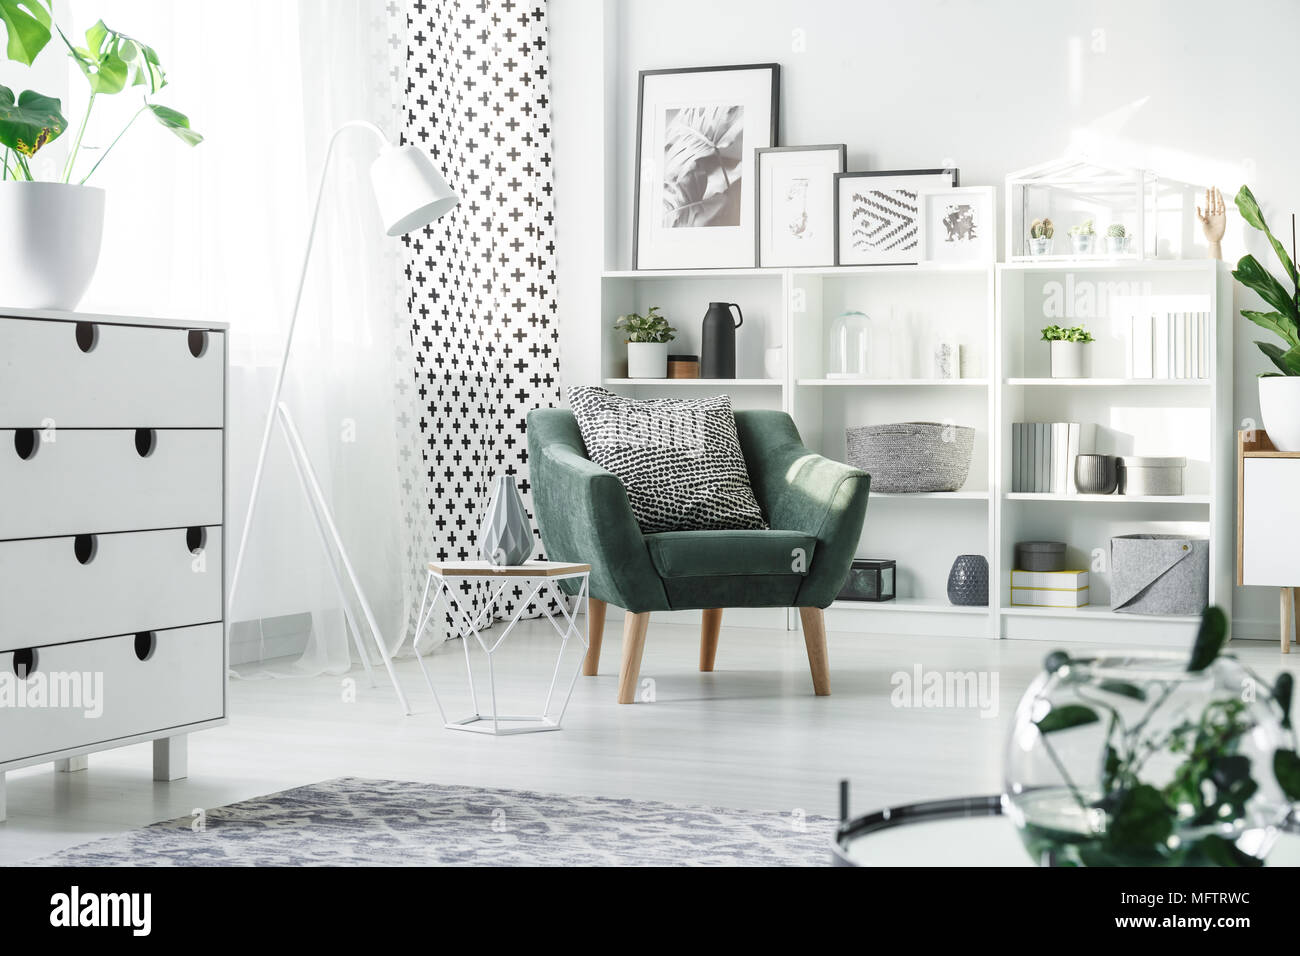 Le mobilier blanc et vert fauteuil avec coussin à motifs placés dans des studio intérieur avec fenêtre et affiches Banque D'Images